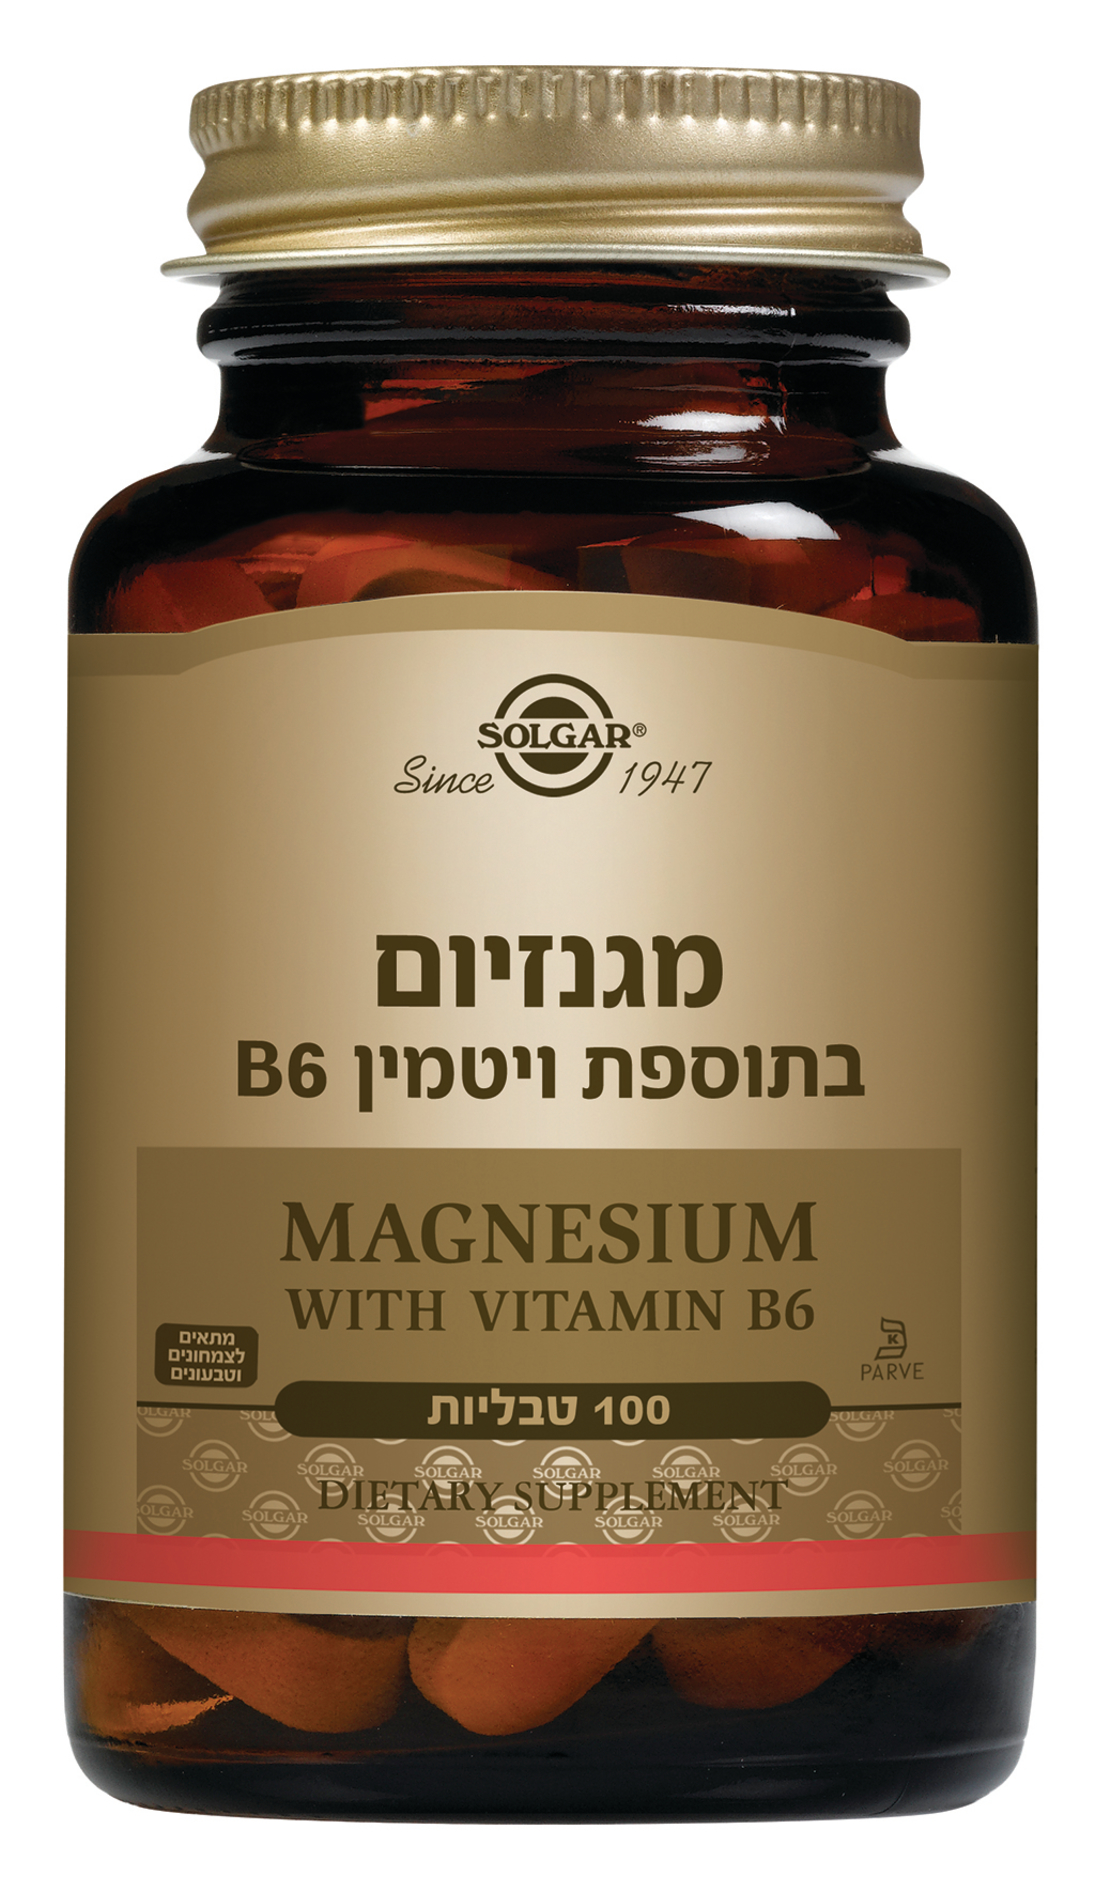 מגנזיום בתוספת ויטמין B6 סולגאר 100 טבליות